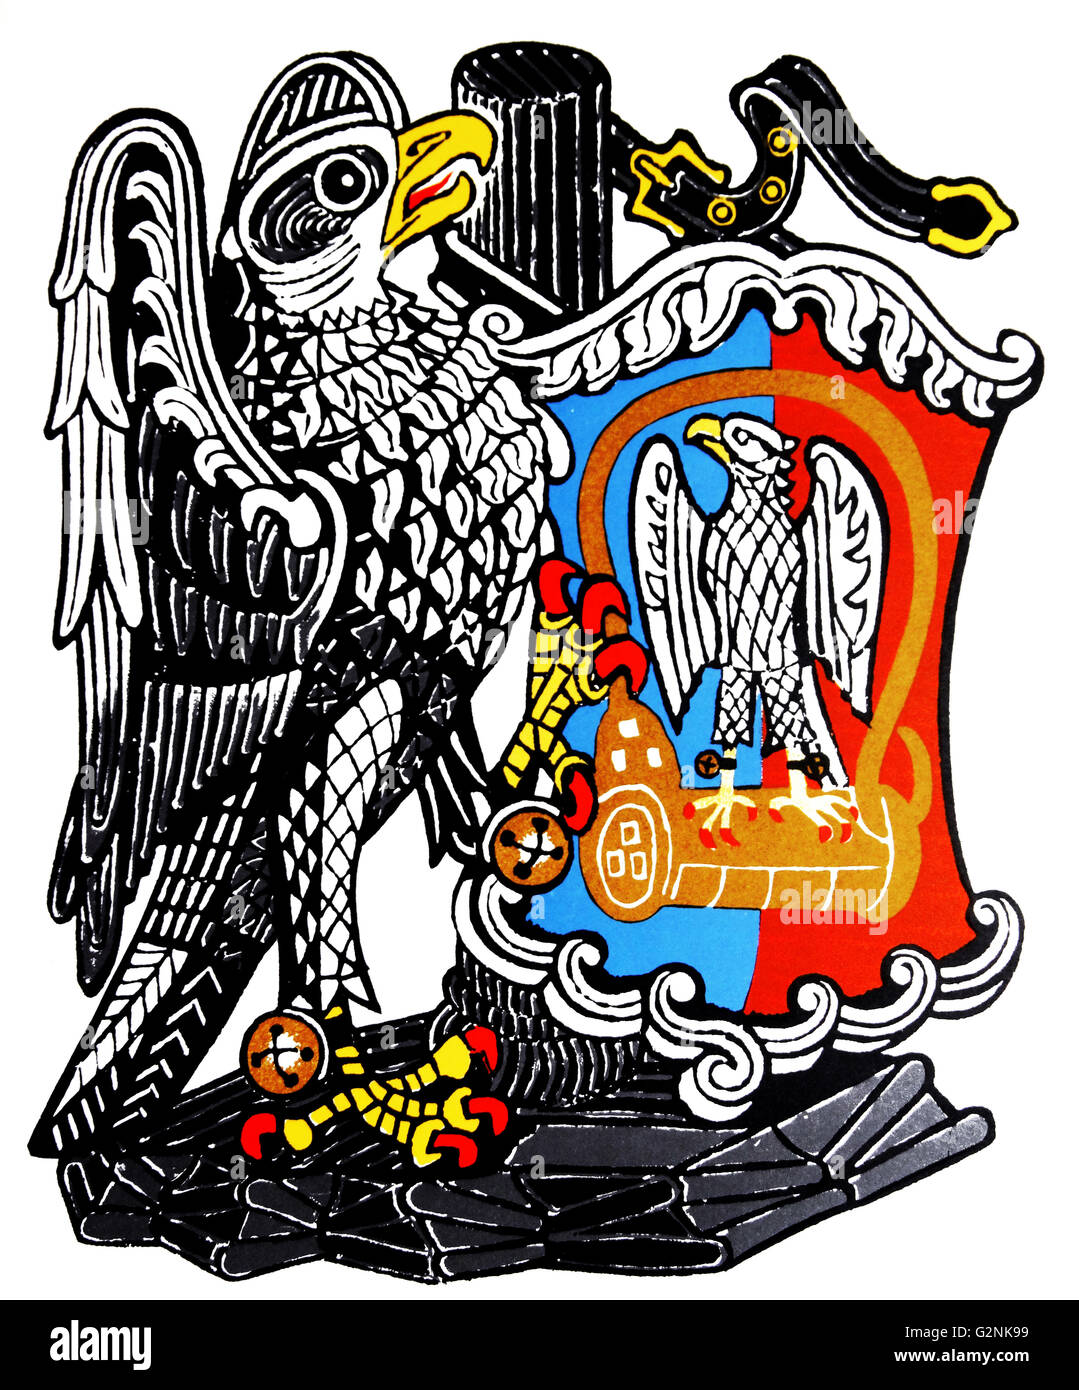 Il Falcon della Plantagenet. Uno dei "la regina delle bestie". Disegnato da Edward Bawden CBE RA (1903 - 1989) era un inglese un artista grafico. Foto Stock